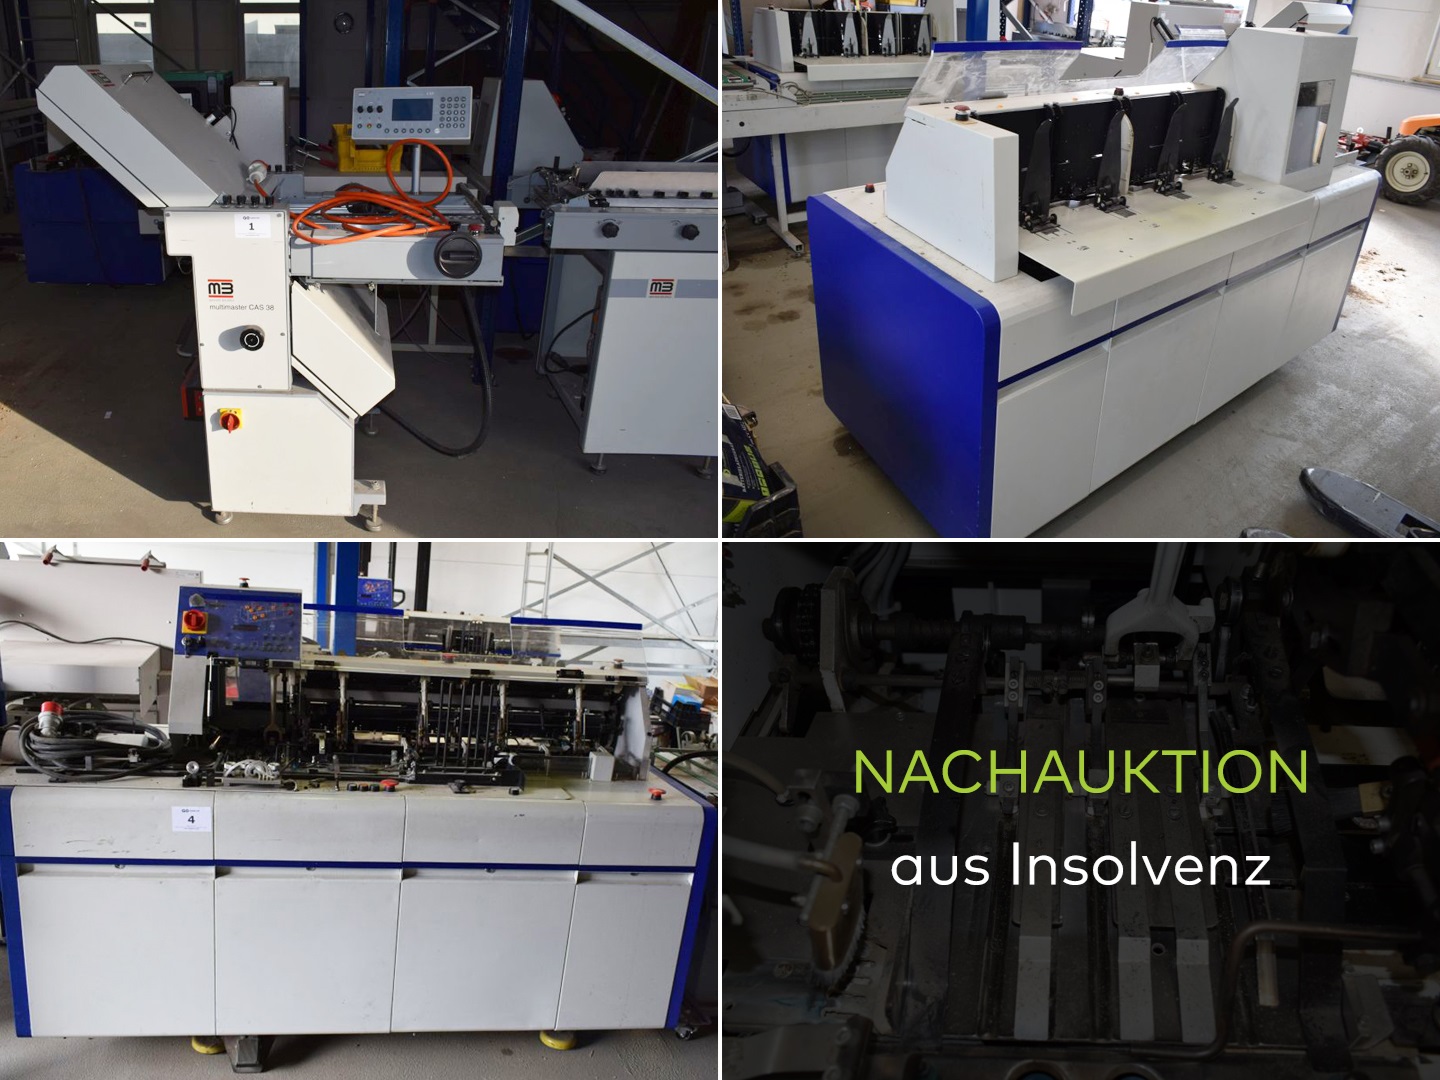 Maschinen zur Papierverarbeitung aus Insolvenz (Nachauktion)